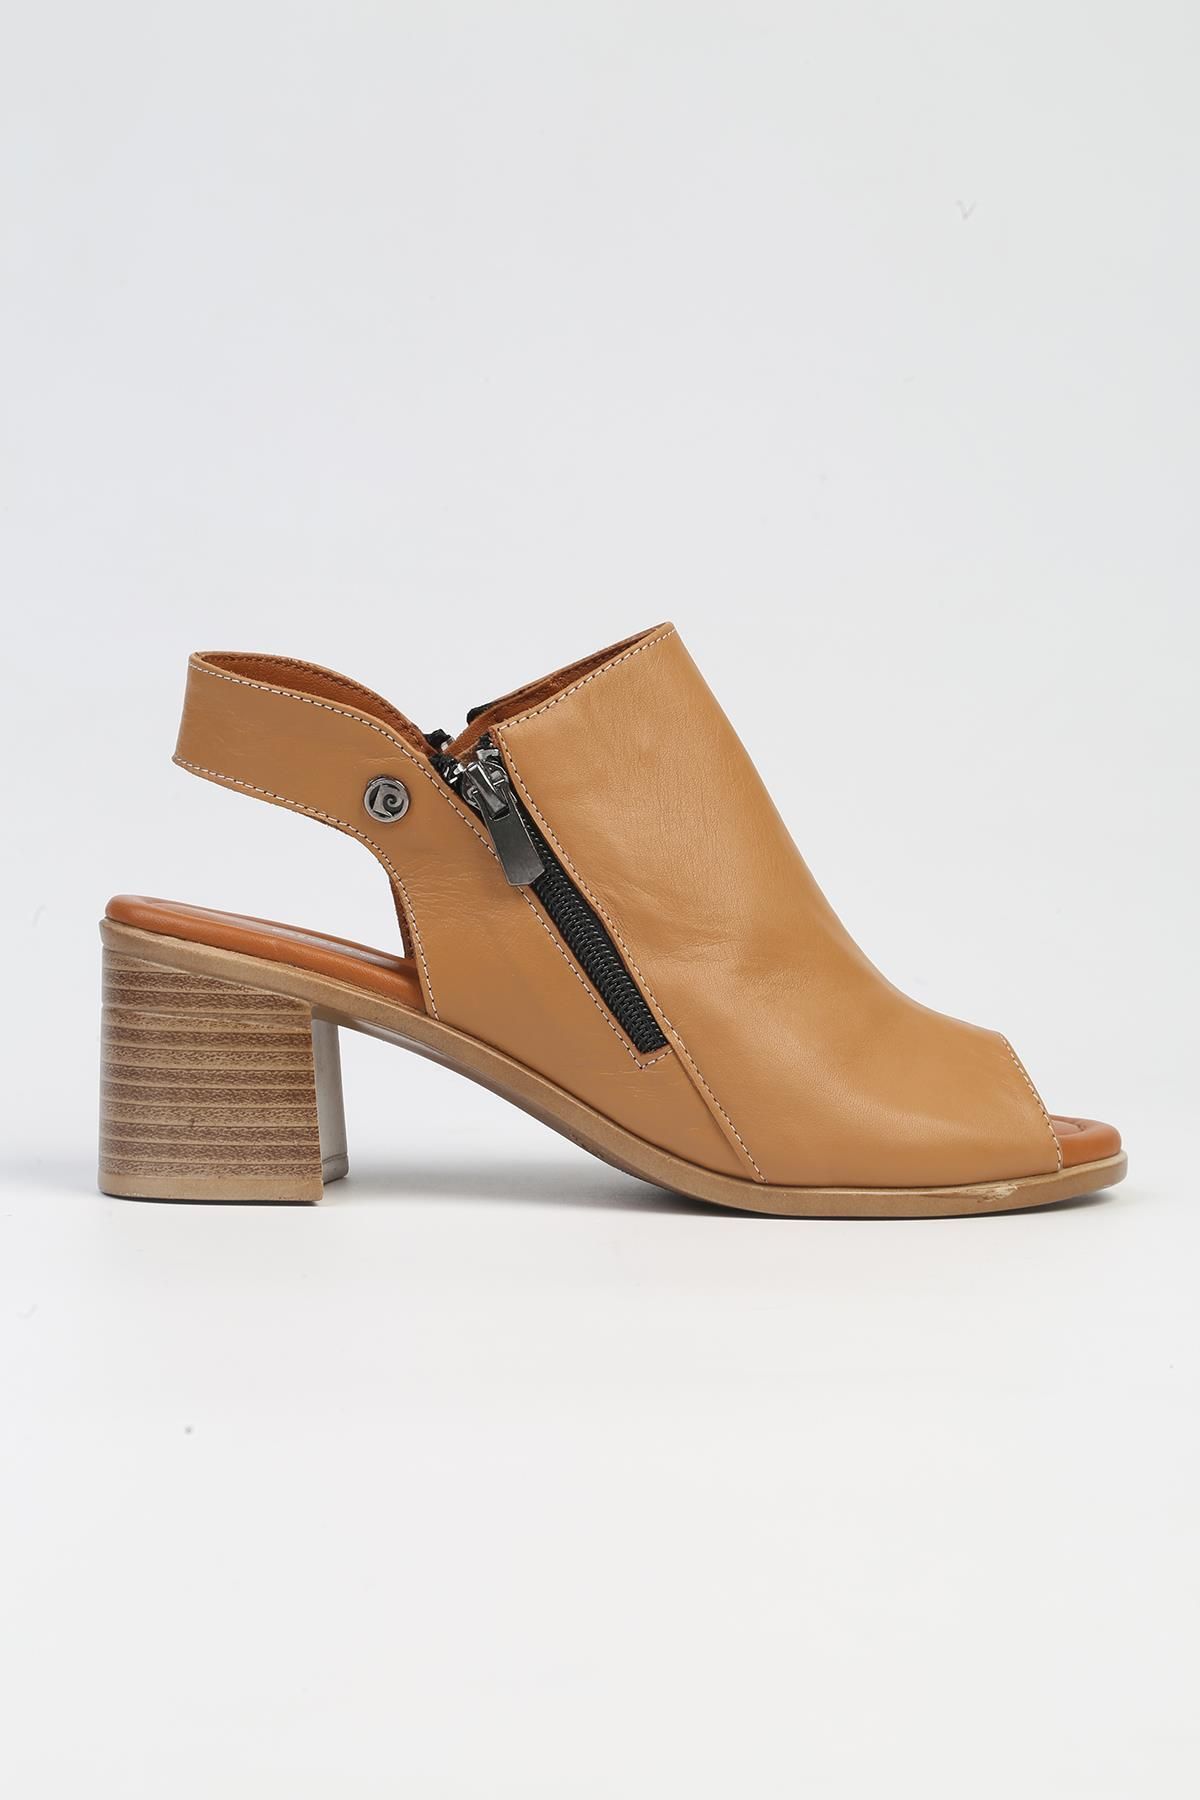 Pierre Cardin ® | PC-7225 - 3807 Taba-Kadın Topuklu Ayakkabı